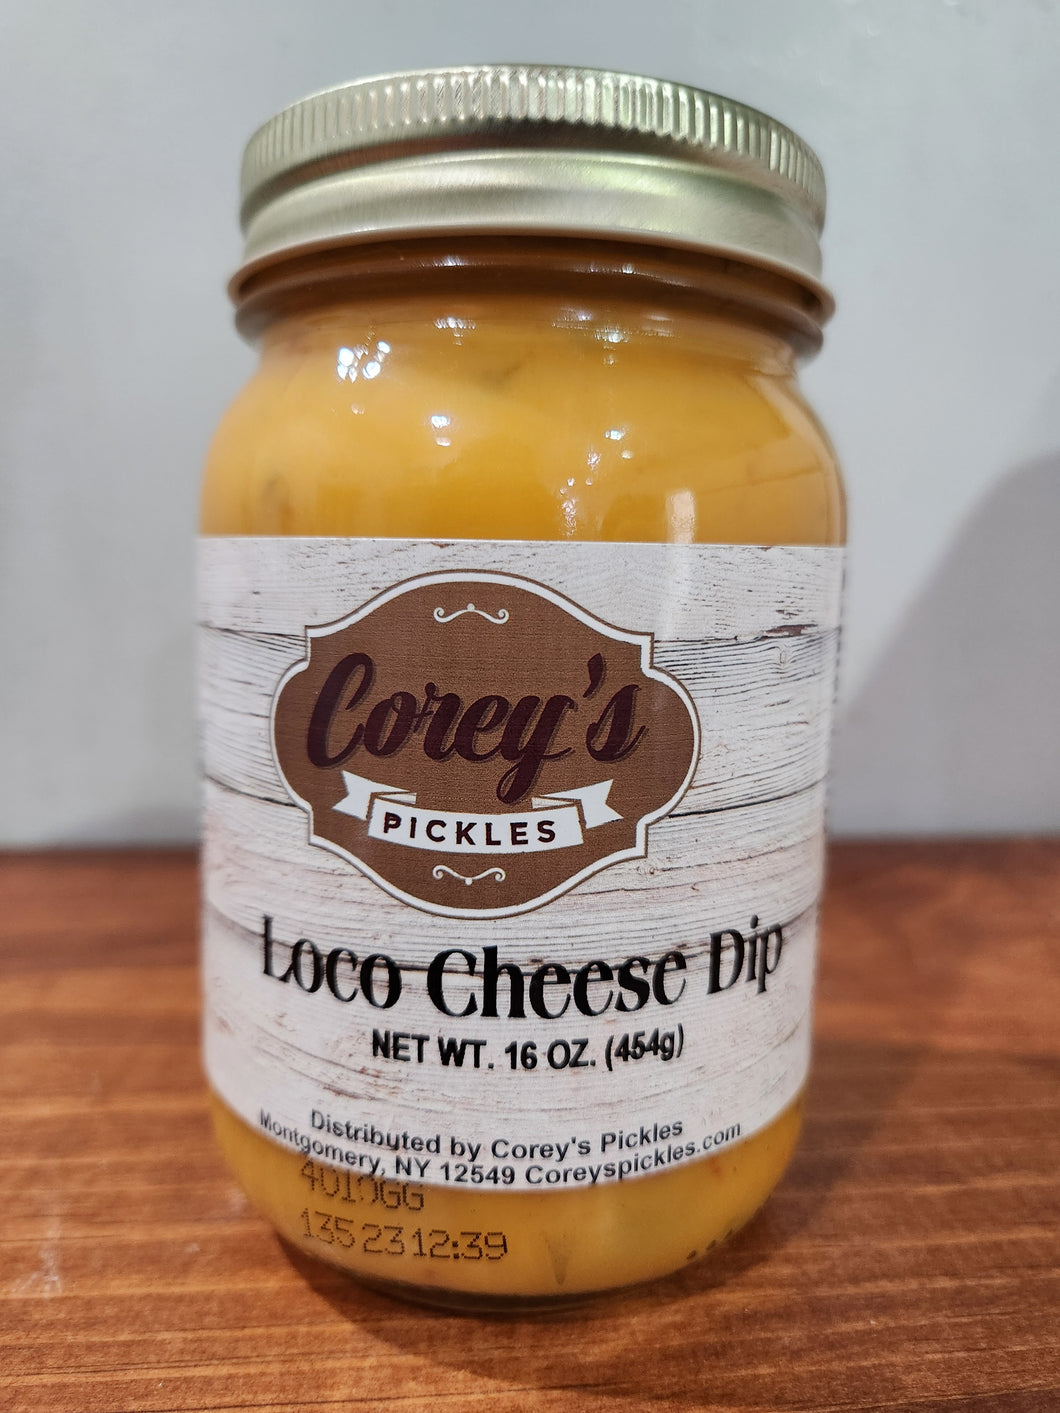 Loco Cheese Dip 16 oz